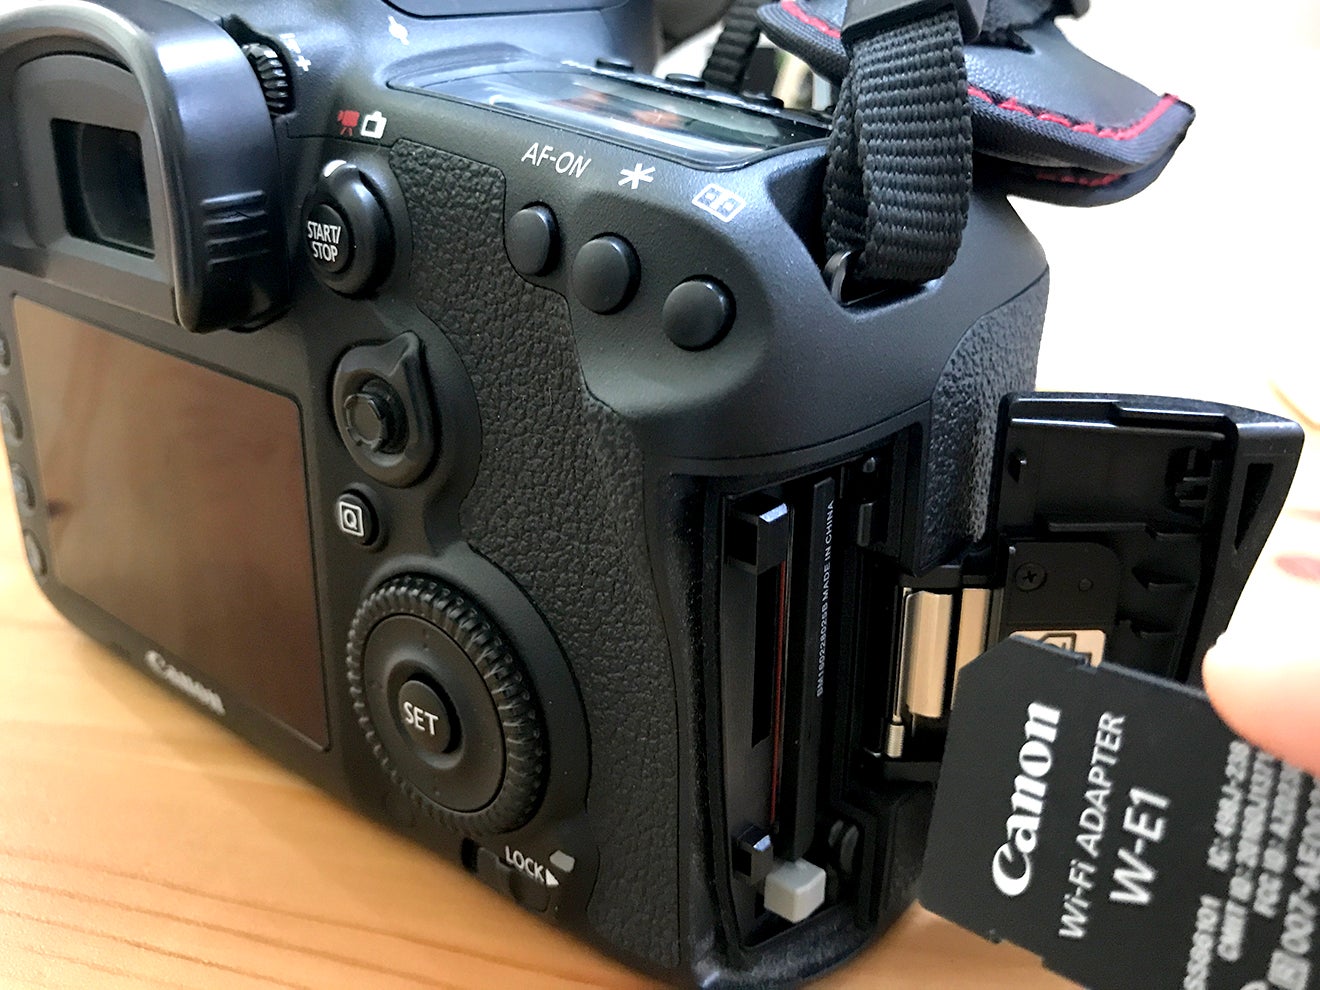 カメラ(Canon EOS 7D Mark II)の画像をスマホに送れるようにしたら便利 